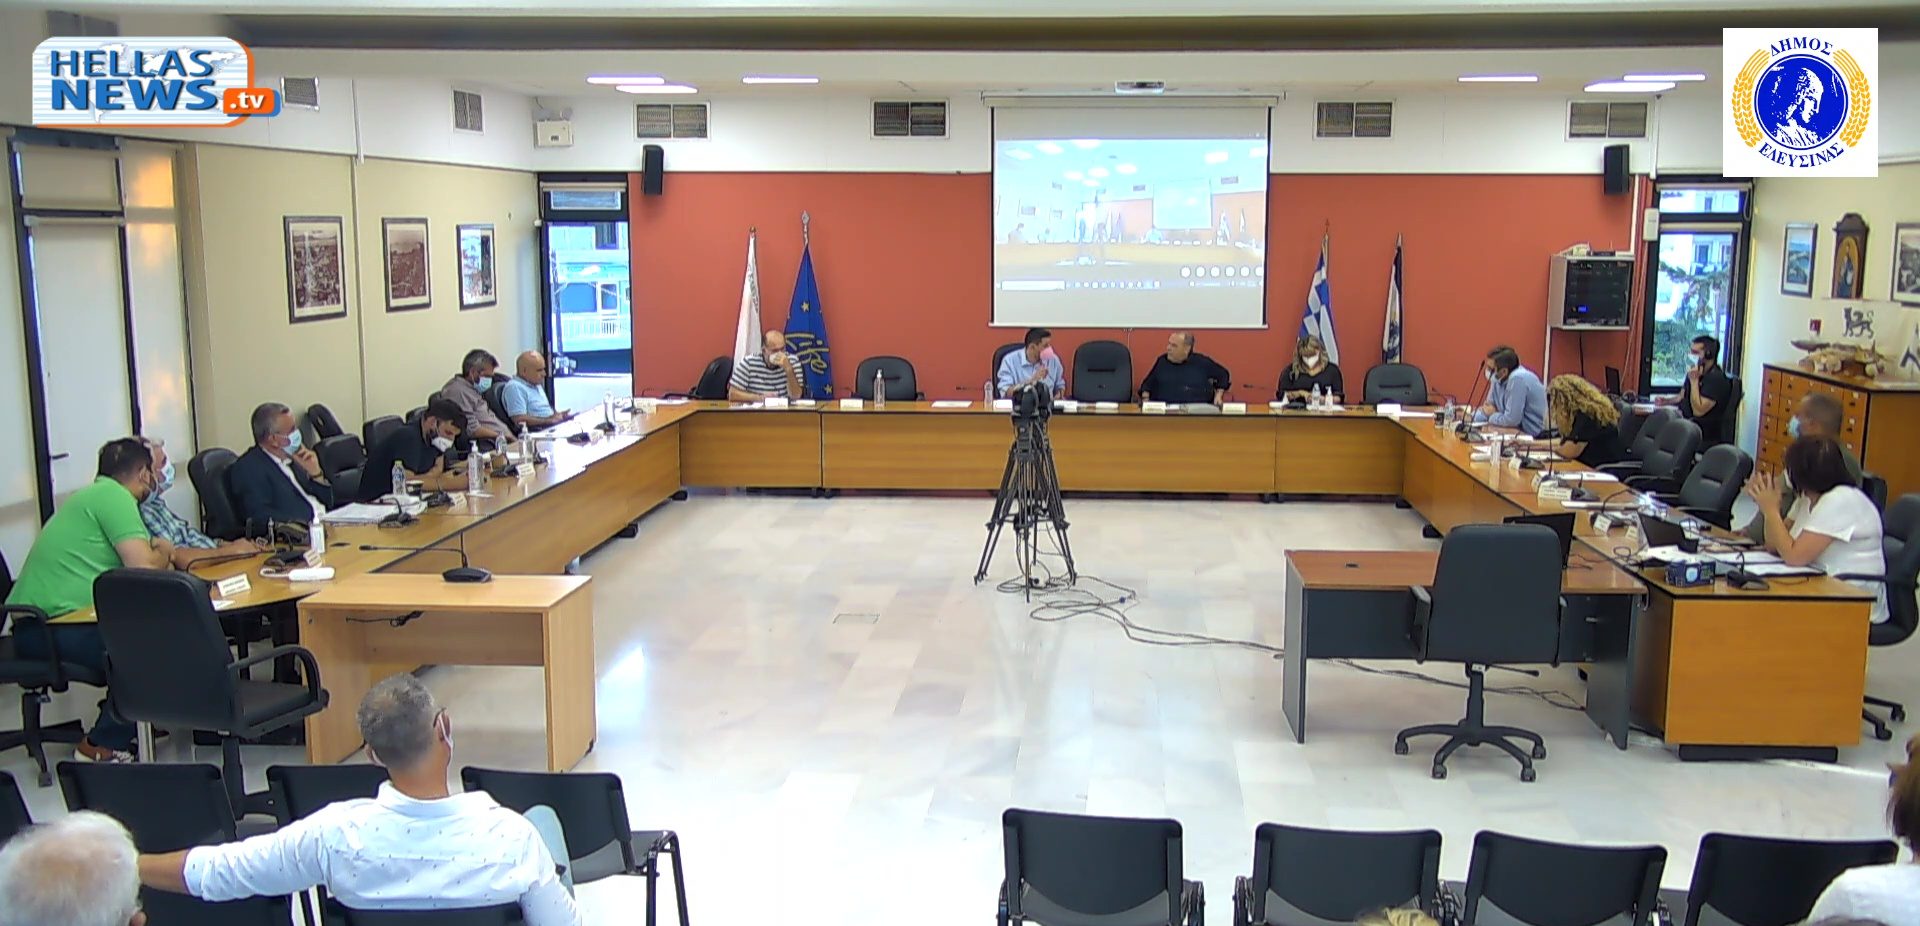 31η Μεικτή Συνεδρίαση του Δημοτικού Συμβουλίου Ελευσίνας.28-09-2022